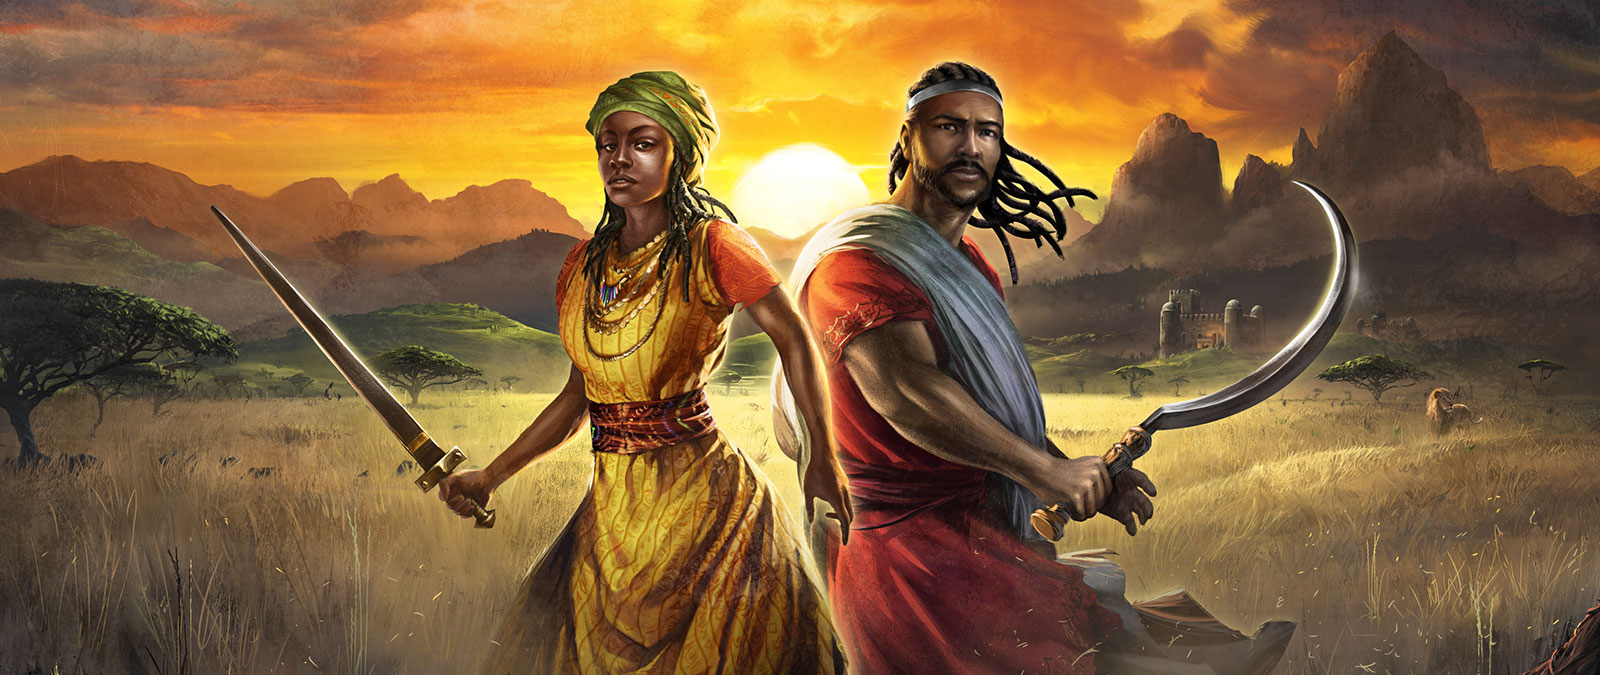 Dvě postavy stojí v poli a drží zbraně při západu slunce